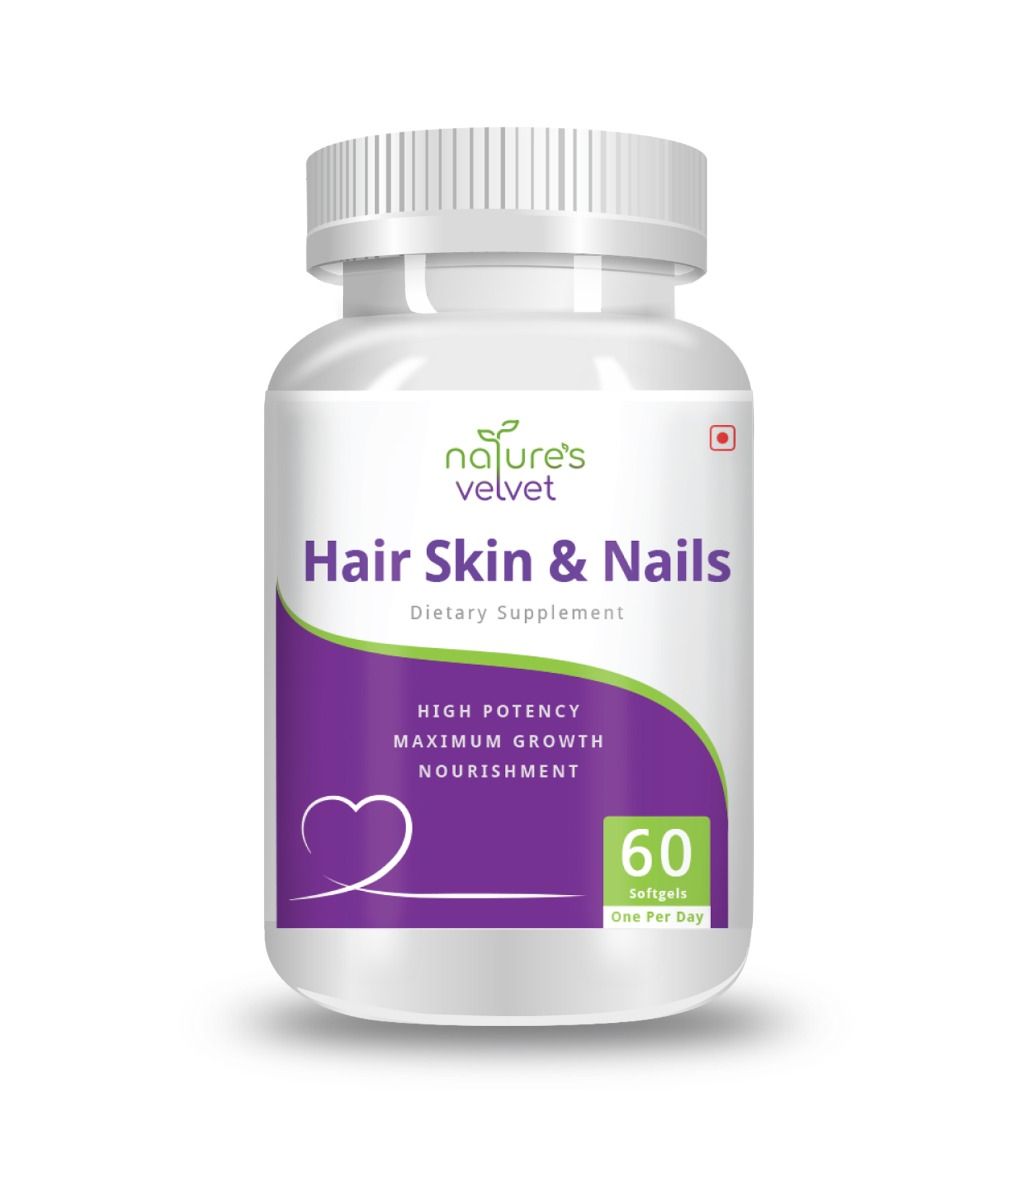 Nature's Velvet Hair Skin & Nails, 60 Softgels, Pack of 1 